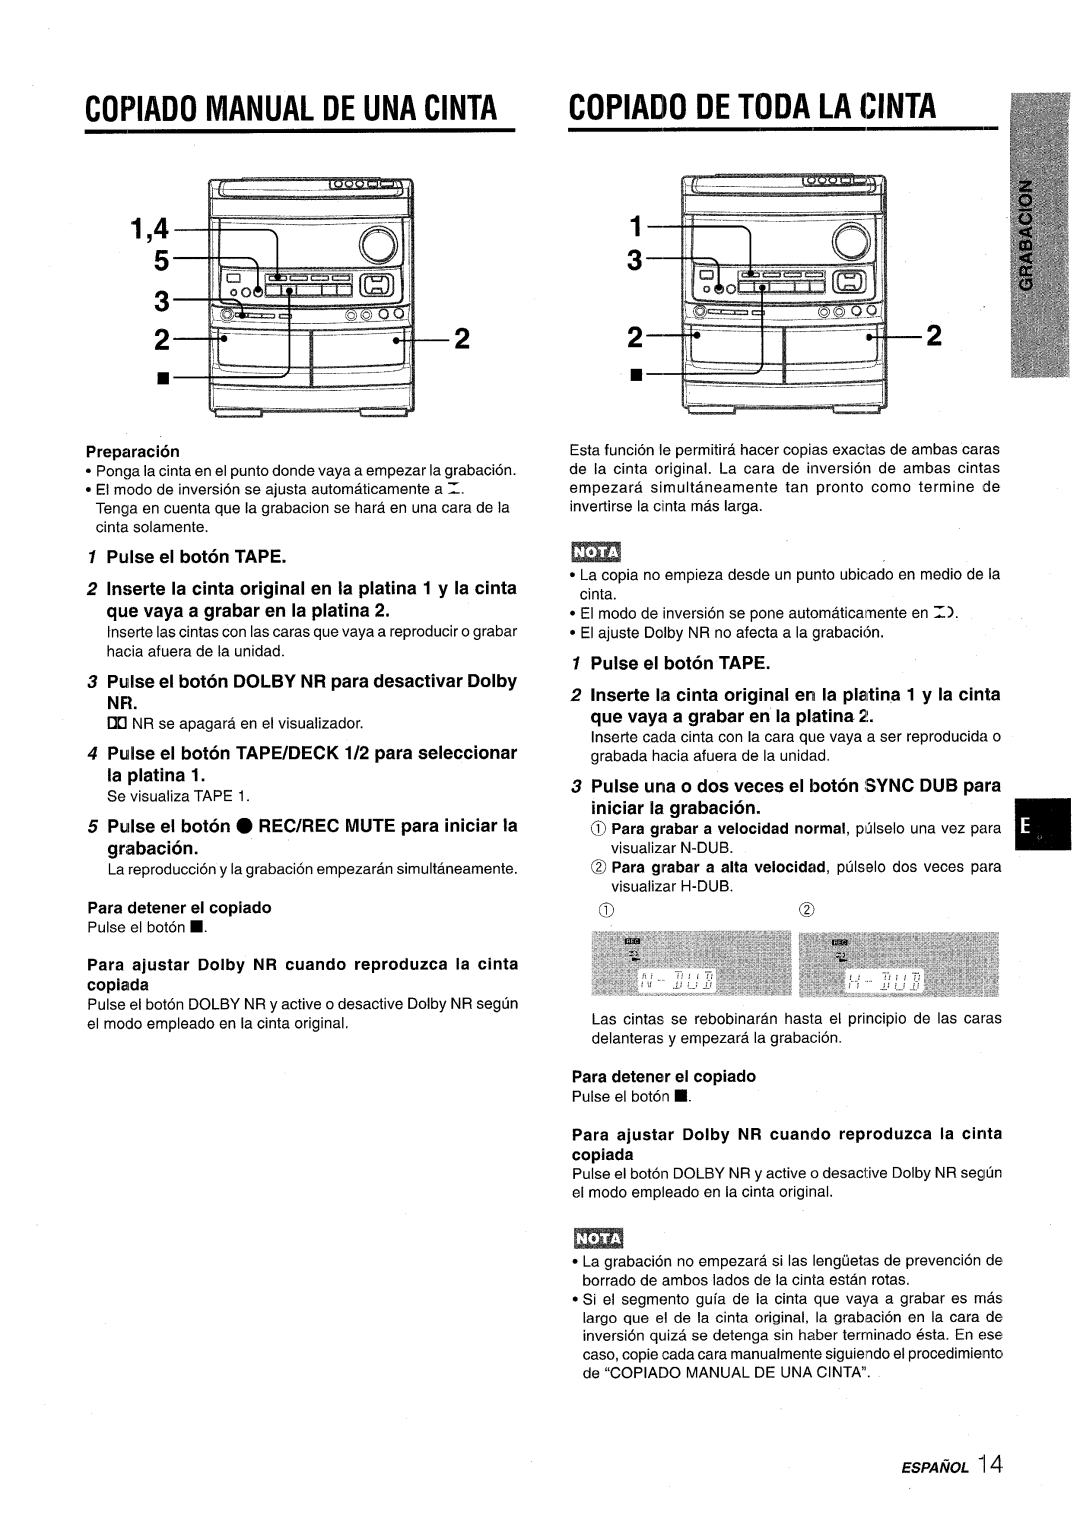 Aiwa NSX-V9000 manual Copiado Manual De Una Cinta, Copiado De Toda La Cinta, Pulse el boton TAPE, Para detener el copiado 